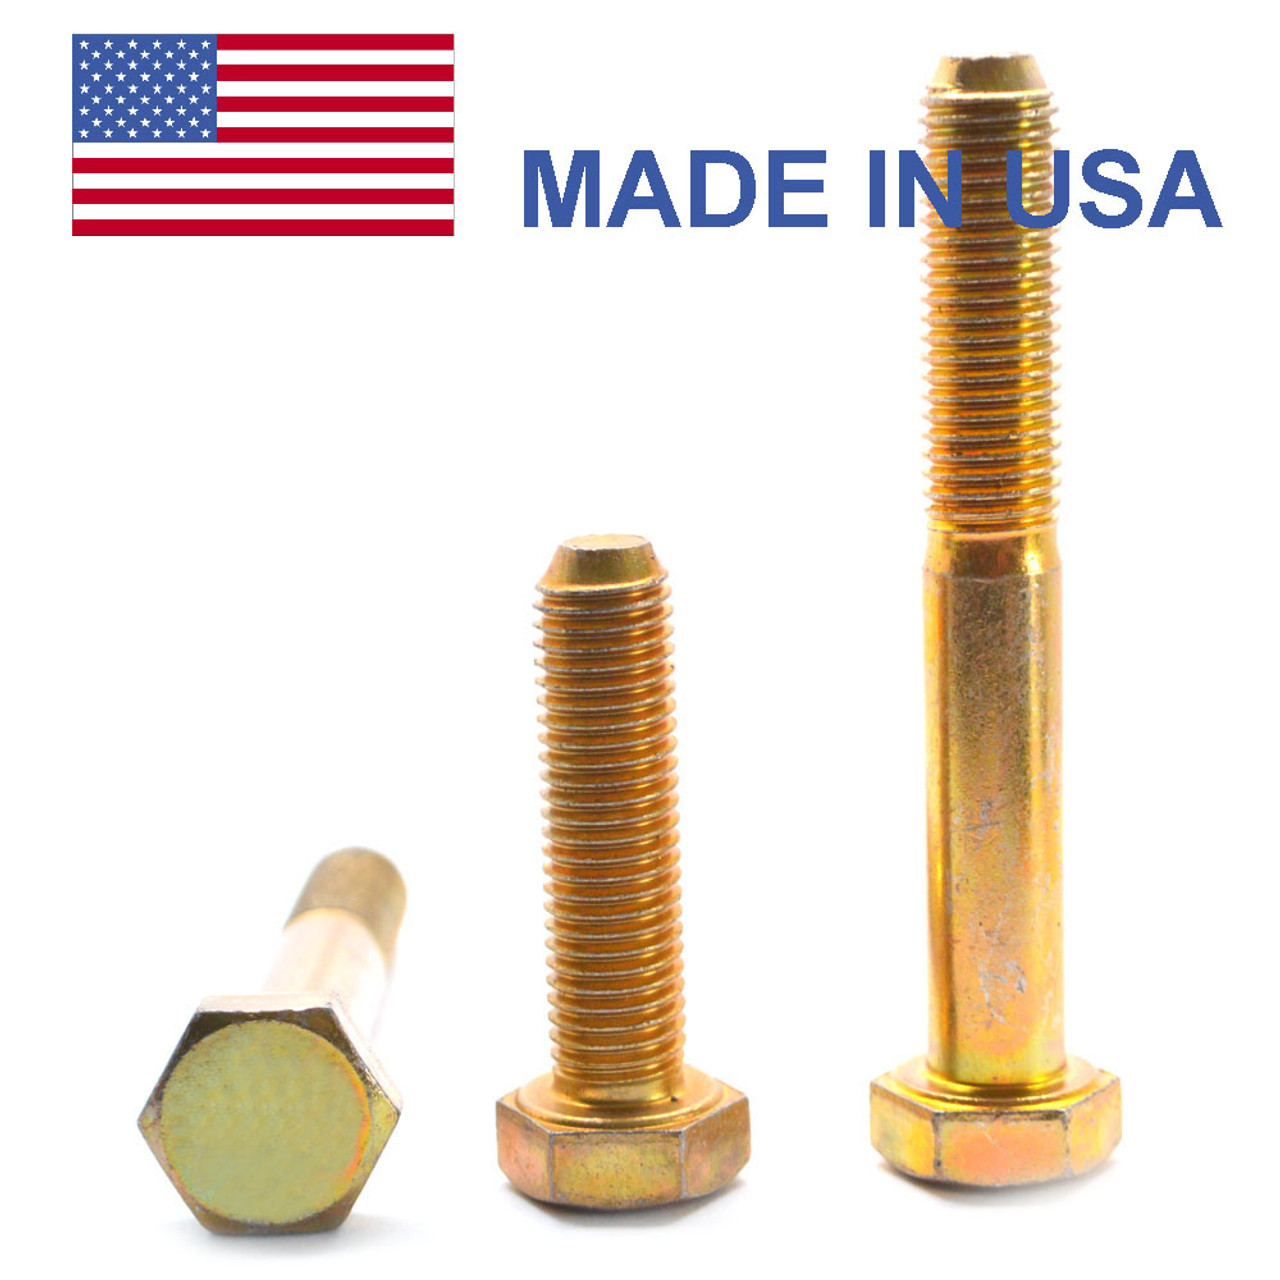 5/16"-24 x 3 1/2" (PT) Fine Thread Grade 8 Hex Cap Screw (Bolt) - USA Alloy Steel Yellow Zinc Plated